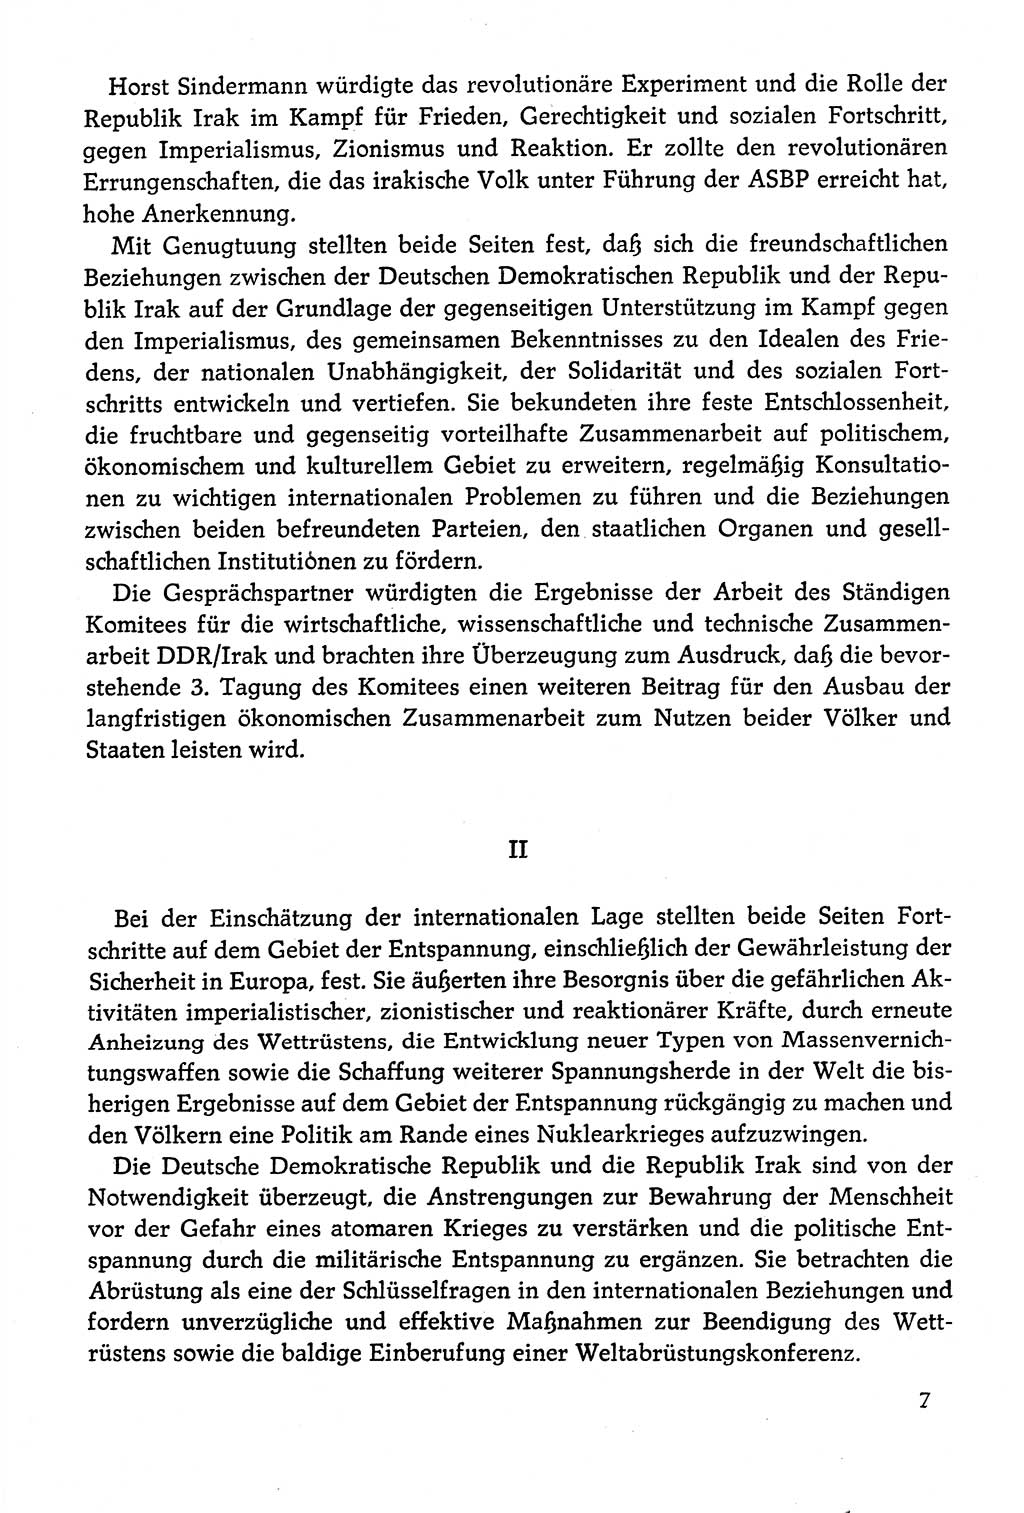 Dokumente der Sozialistischen Einheitspartei Deutschlands (SED) [Deutsche Demokratische Republik (DDR)] 1978-1979, Seite 7 (Dok. SED DDR 1978-1979, S. 7)